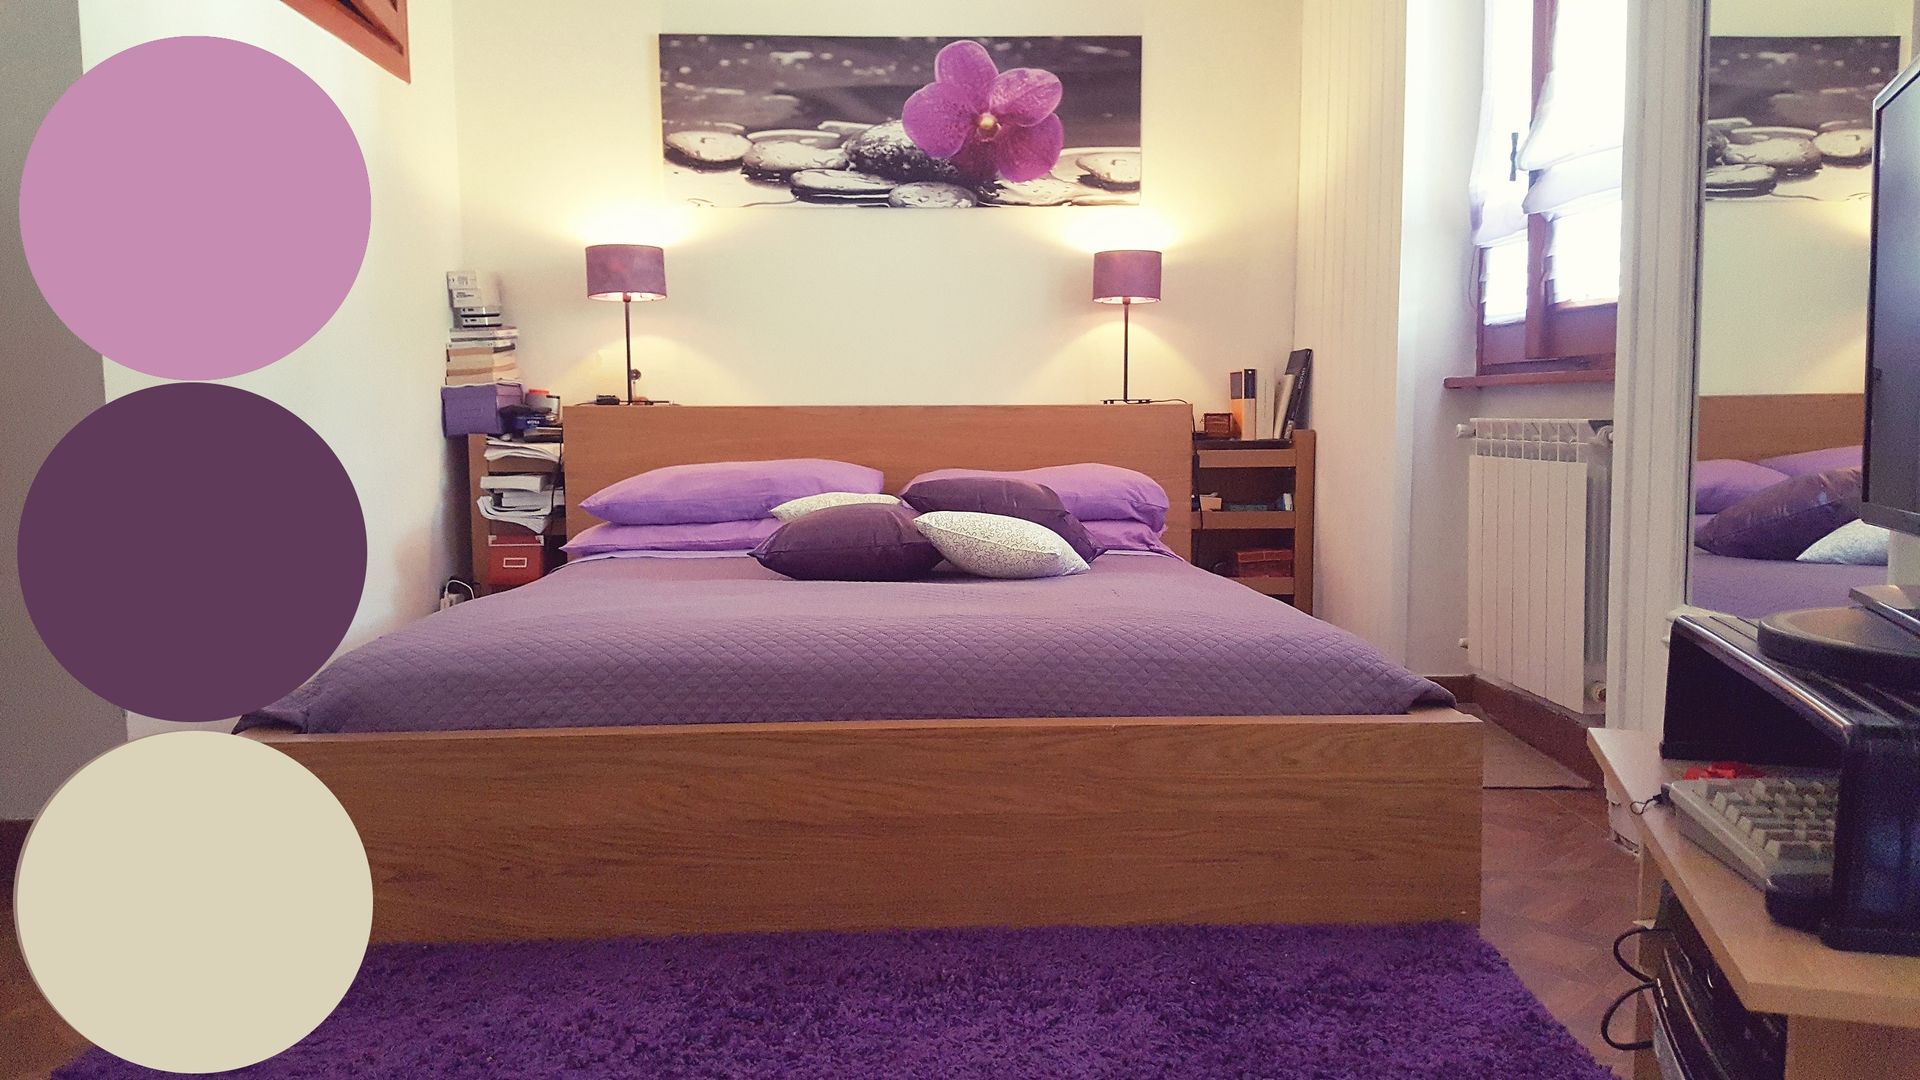 Camera lilla, viola e bianco Sublacense Home Staging Camera da letto coloniale Letti e testate